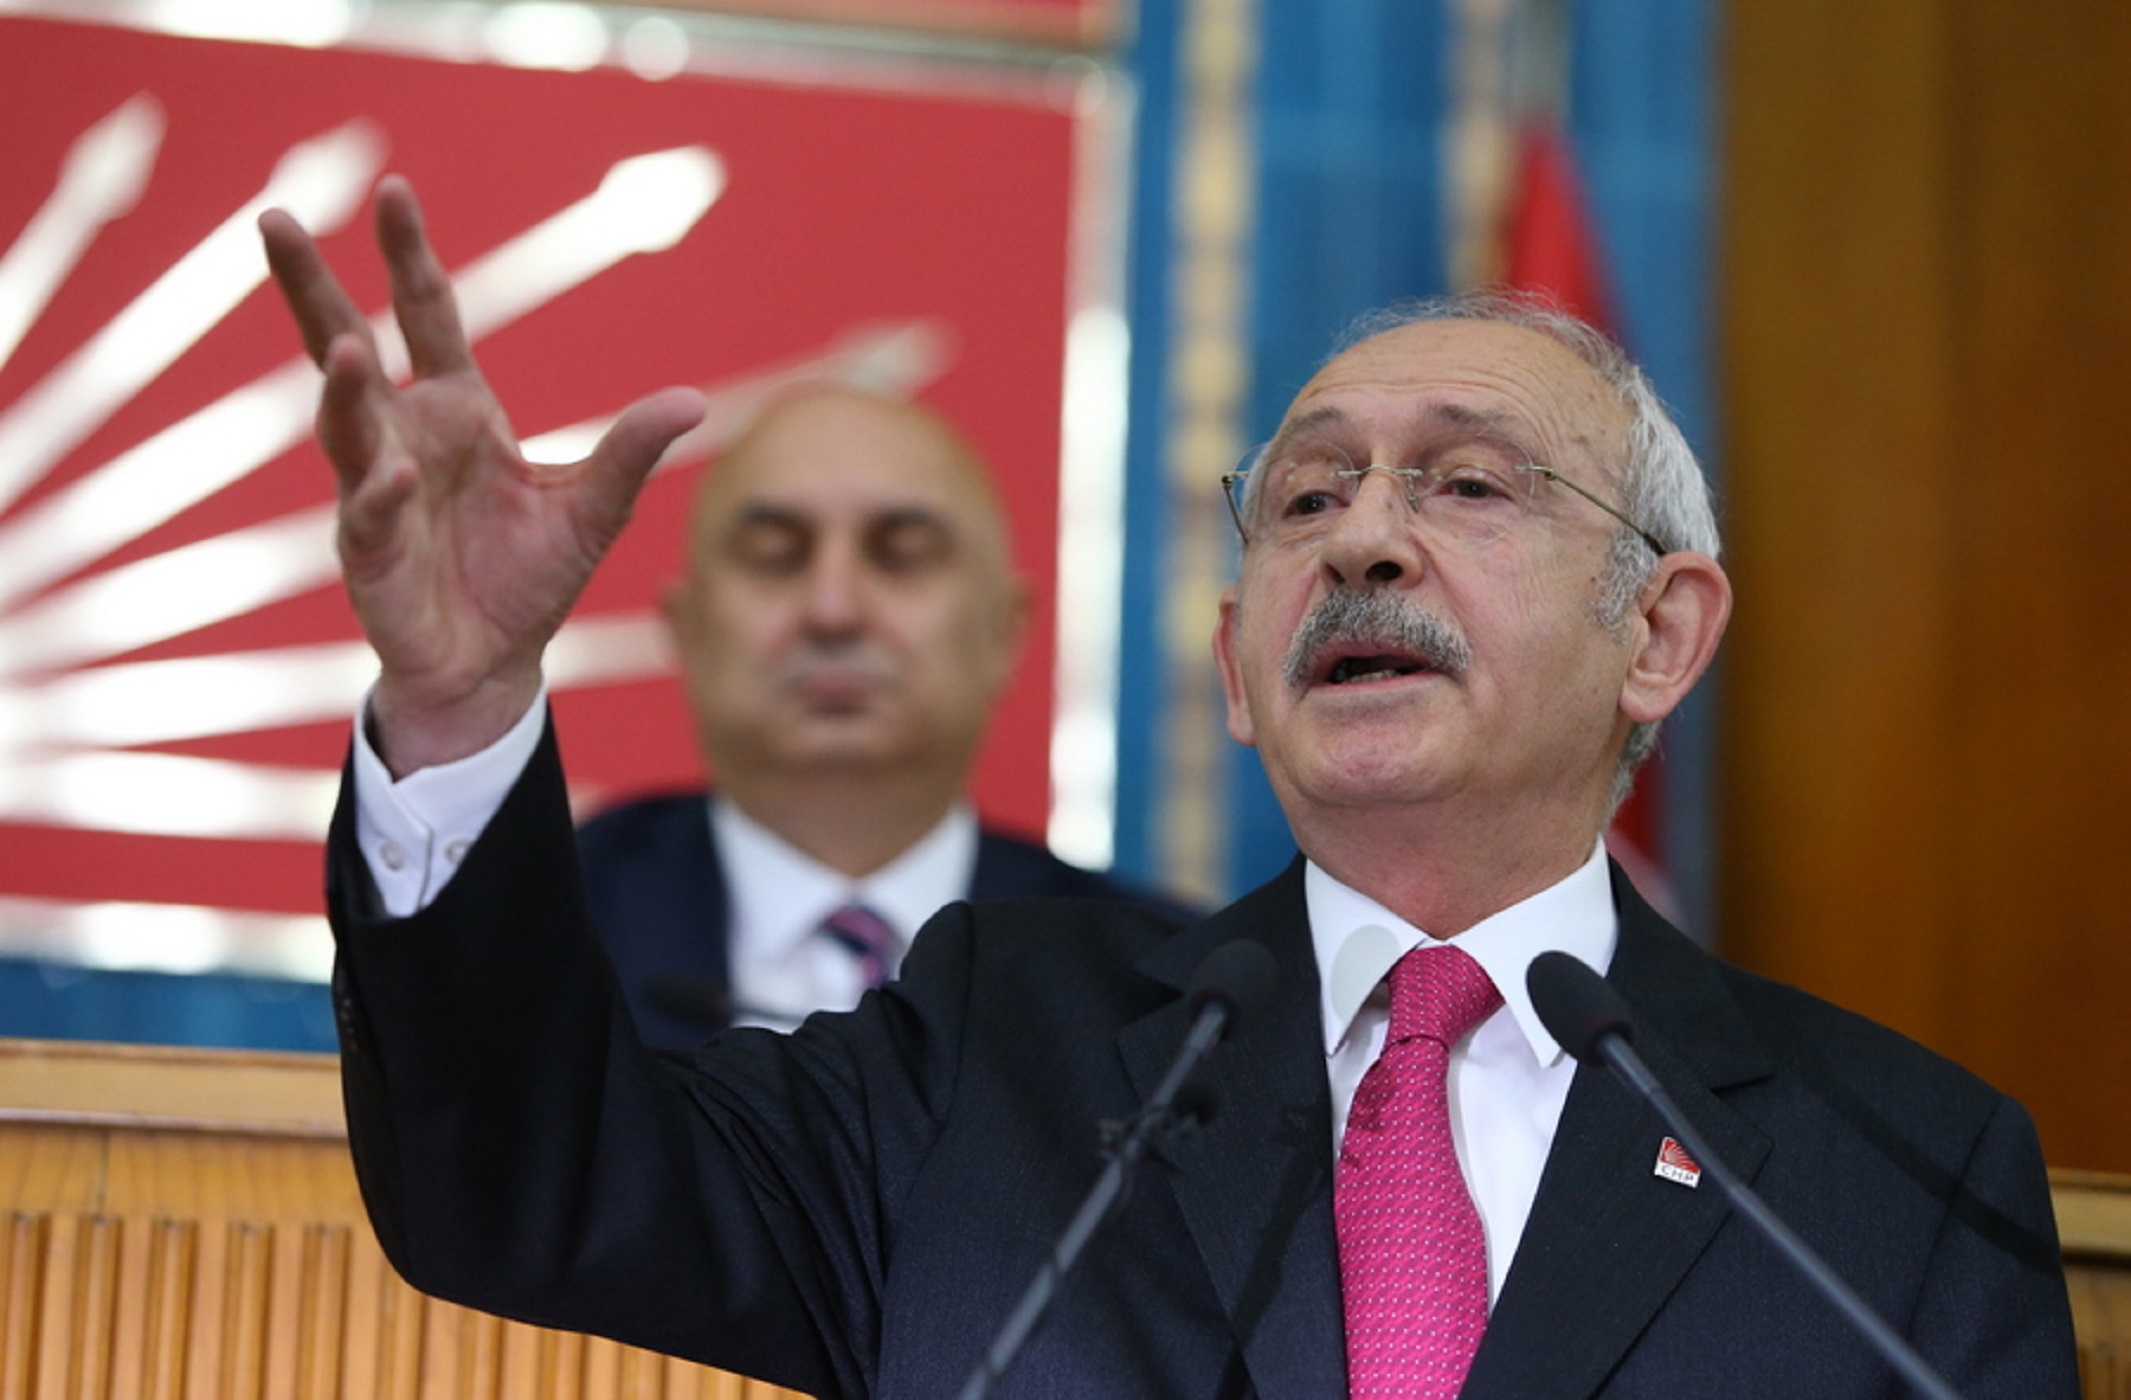 Τουρκία: Ο Κιλιτσντάρογλου δεν θα πληρώνει ρεύμα μέχρι ο Ερντογάν να αποσύρει τις αυξήσεις